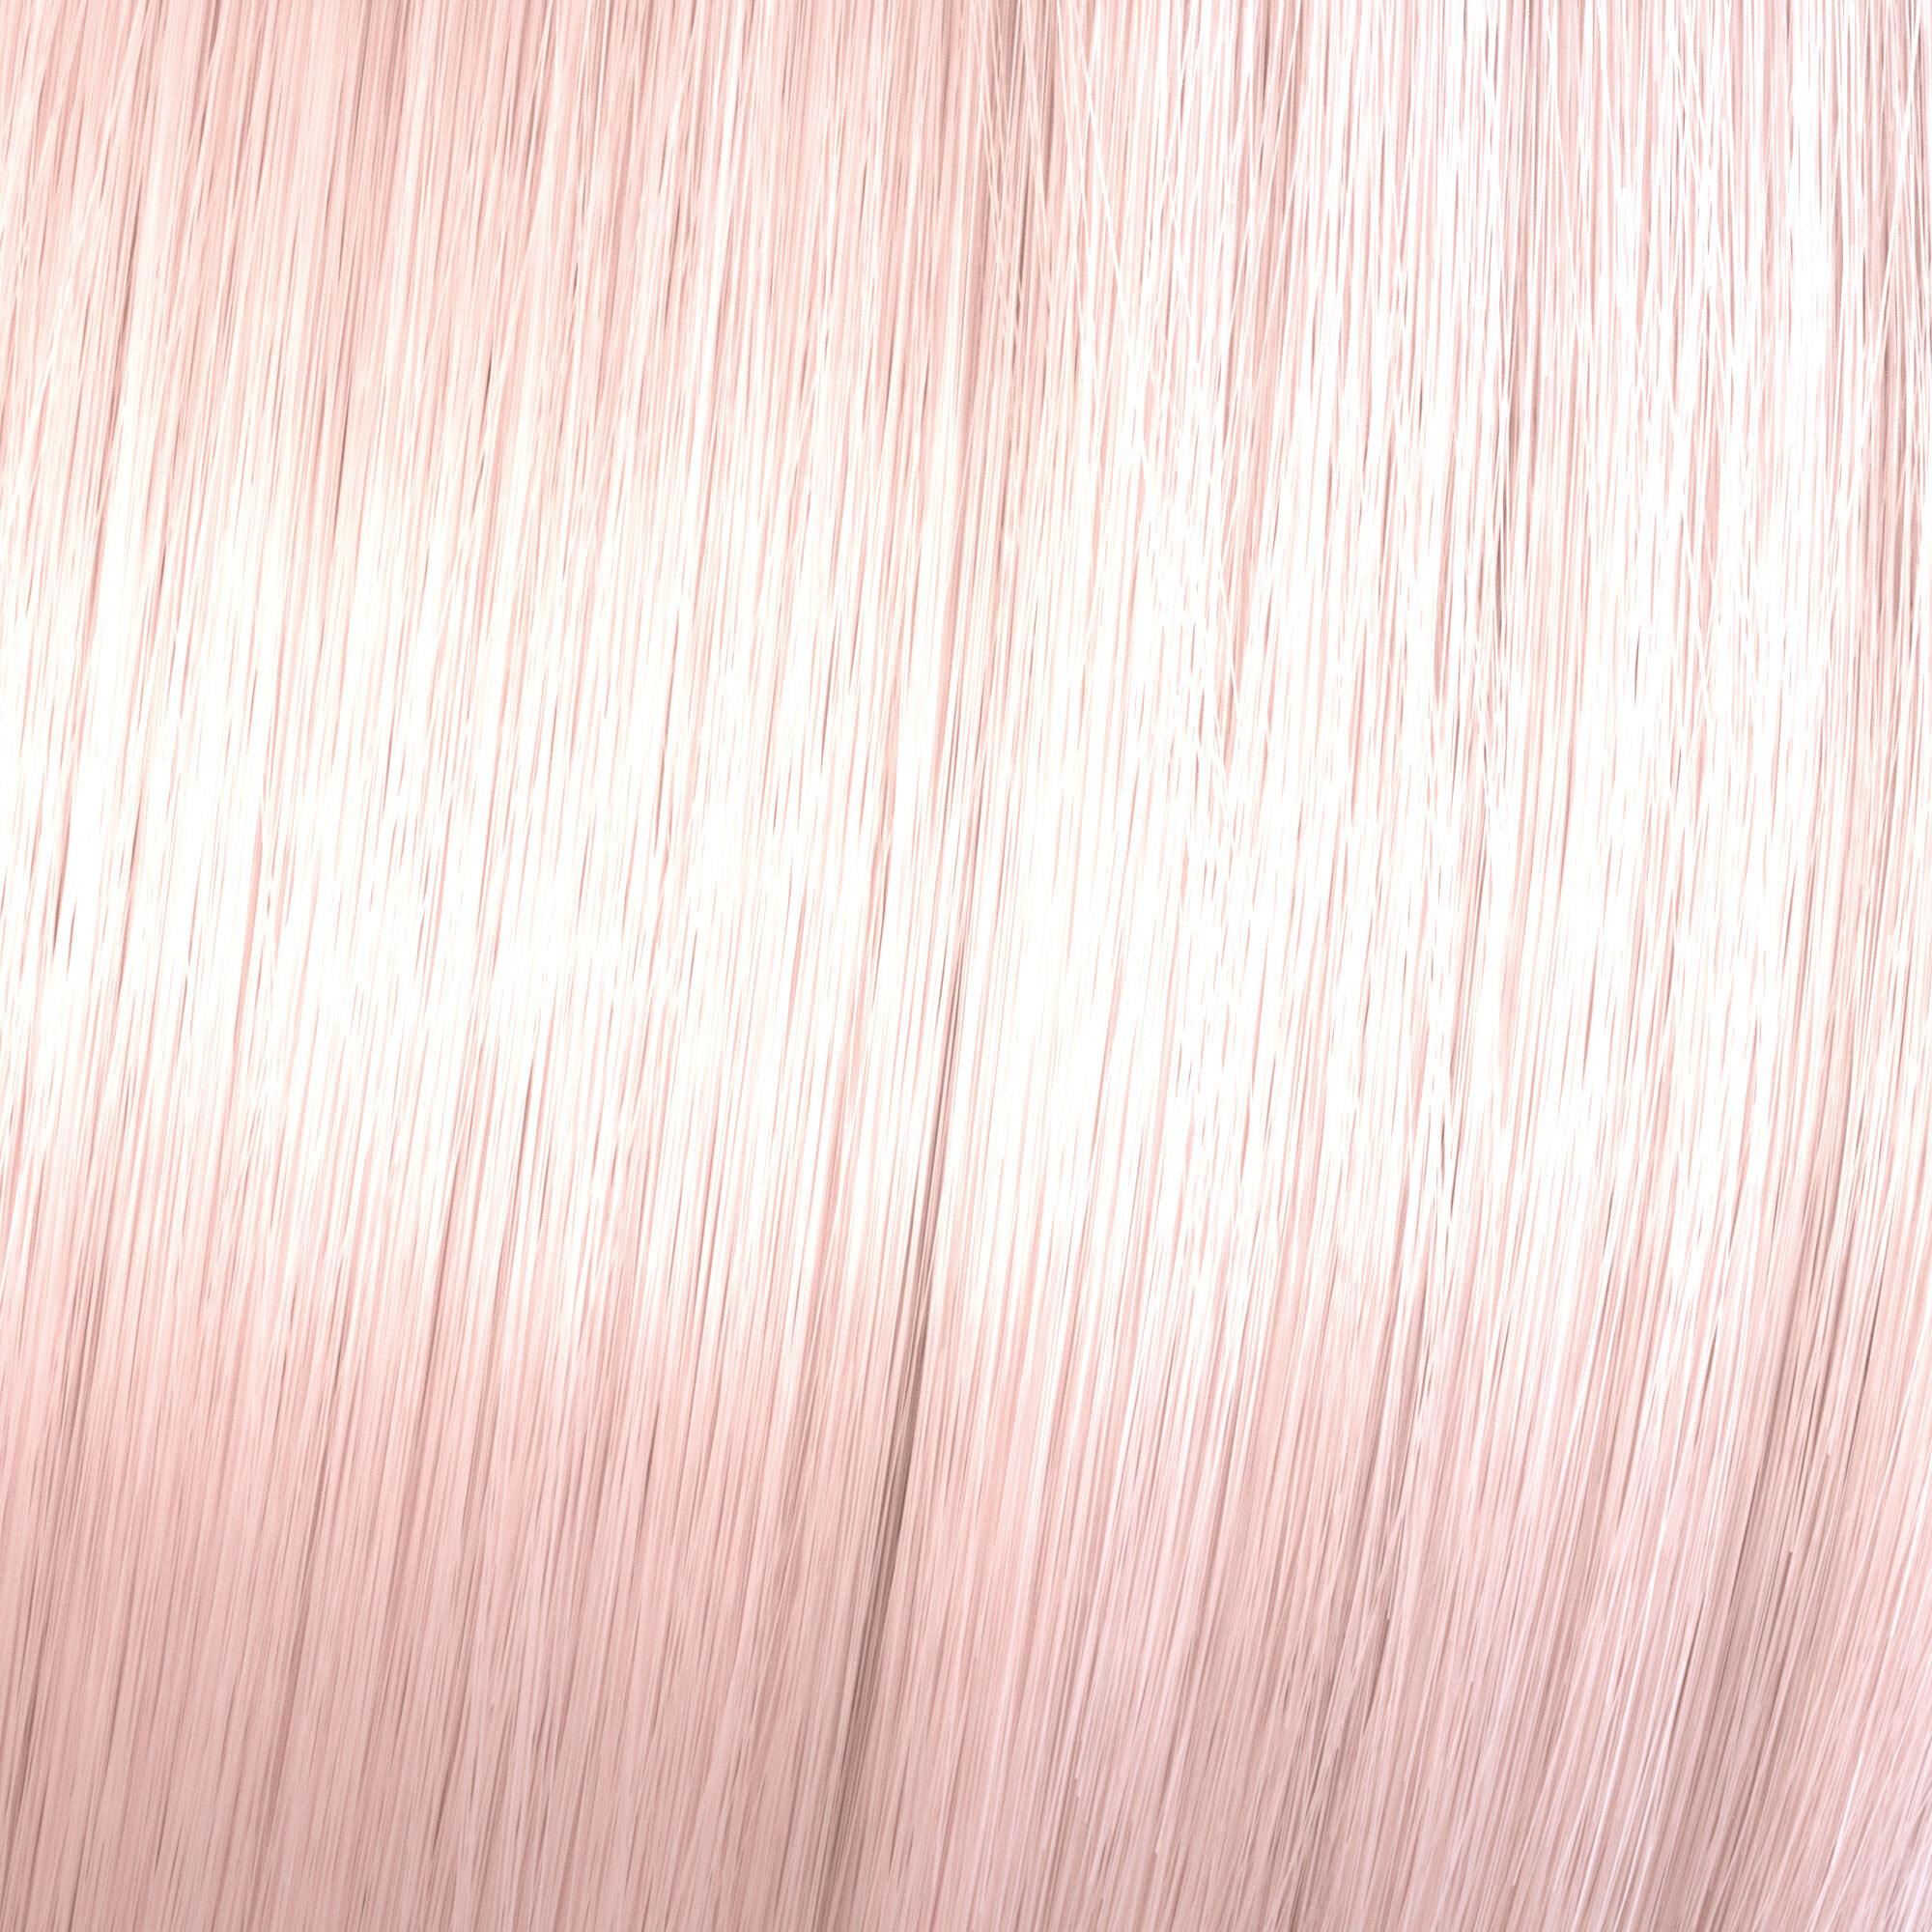 Wella Shinefinity Color Glaze - 09/05 Very Light Blonde Natural Mahogany